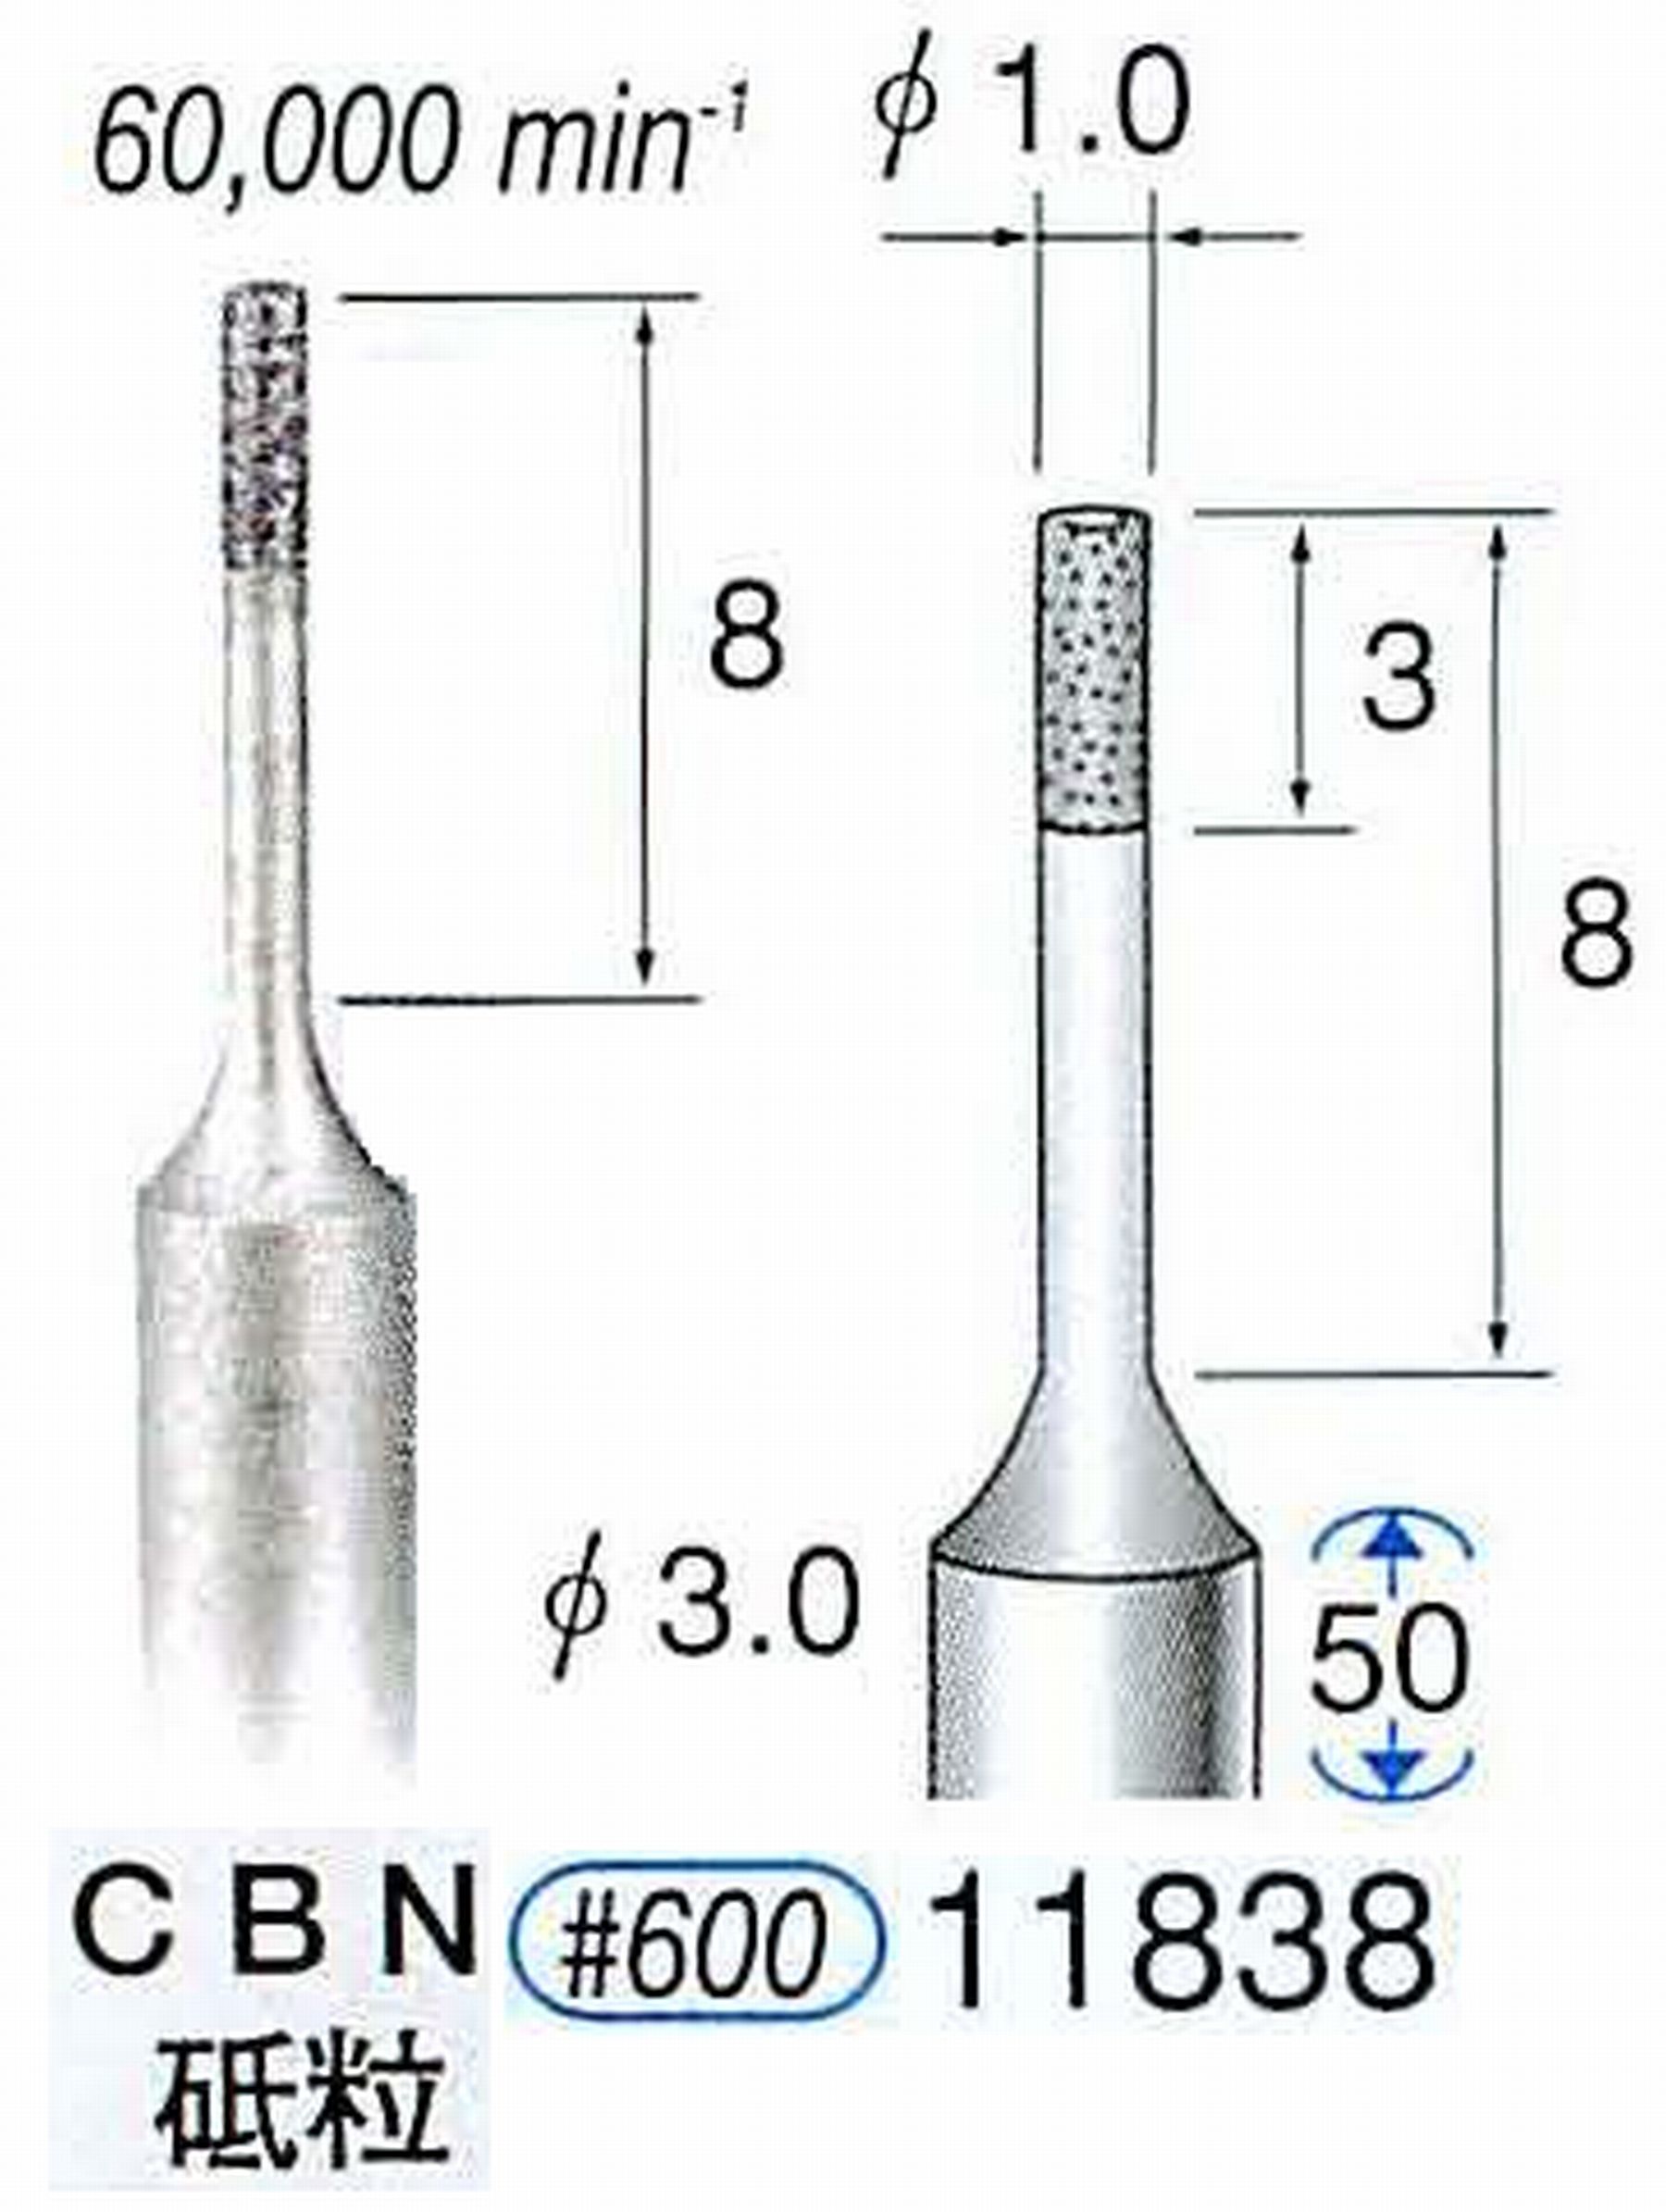 ナカニシ/NAKANISHI SP電着CBNバー CBN砥粒 軸径(シャンク)φ3.0mm 11838